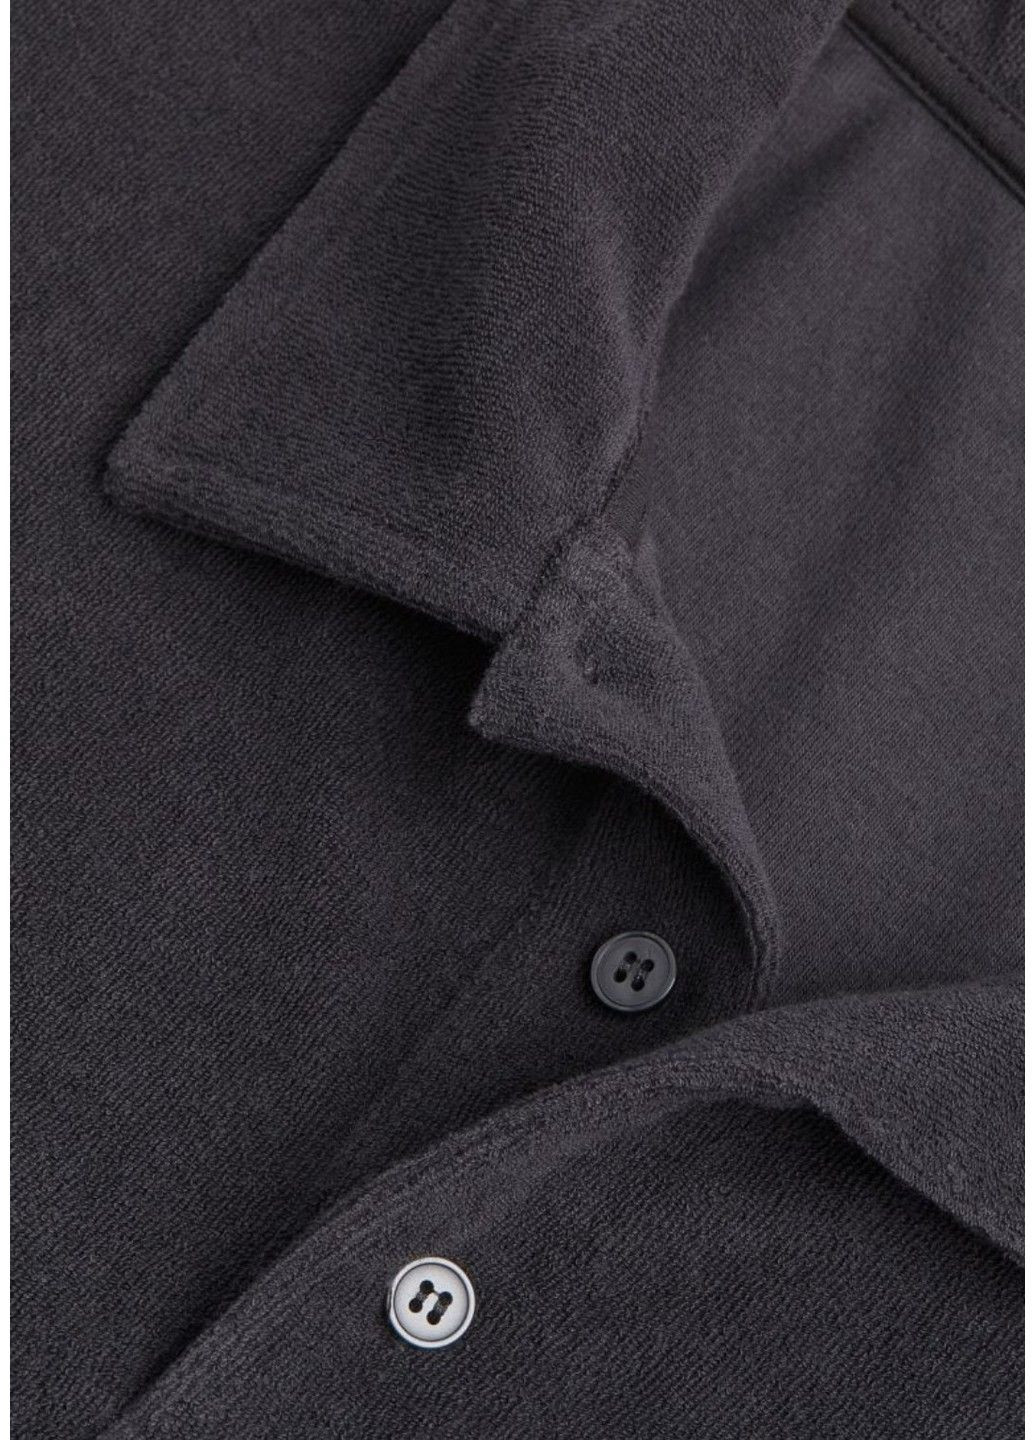 Темно-сіра чоловіча футболка з махрової тканини з коміром relaxed fit н&м (56996) s темно-сіра H&M